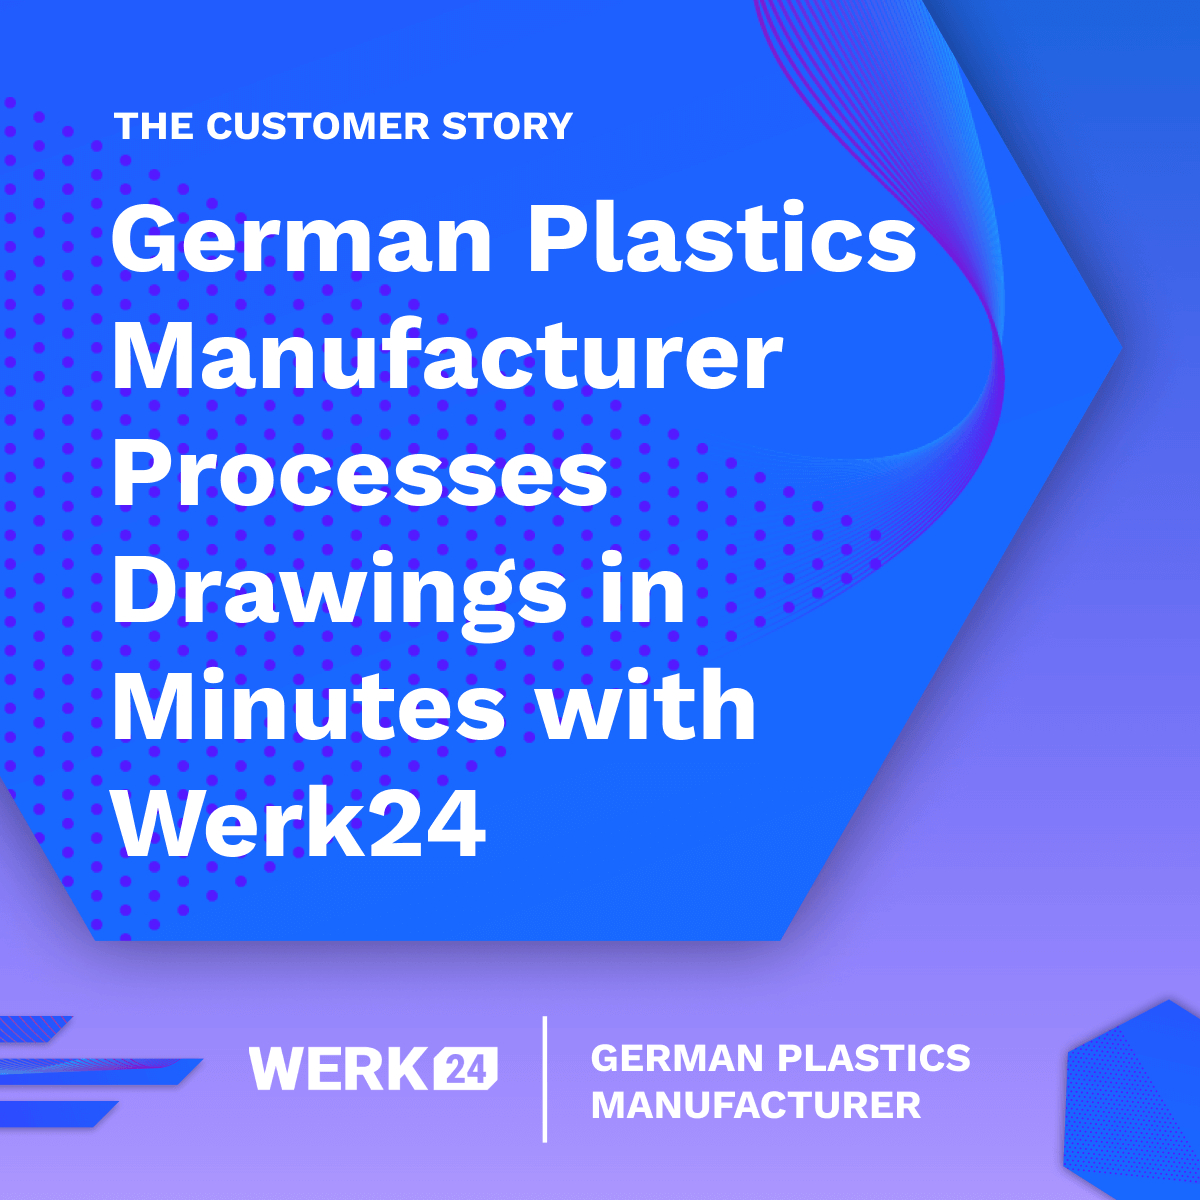 Un fabricant allemand de matières plastiques traite des dessins en quelques minutes avec Werk24